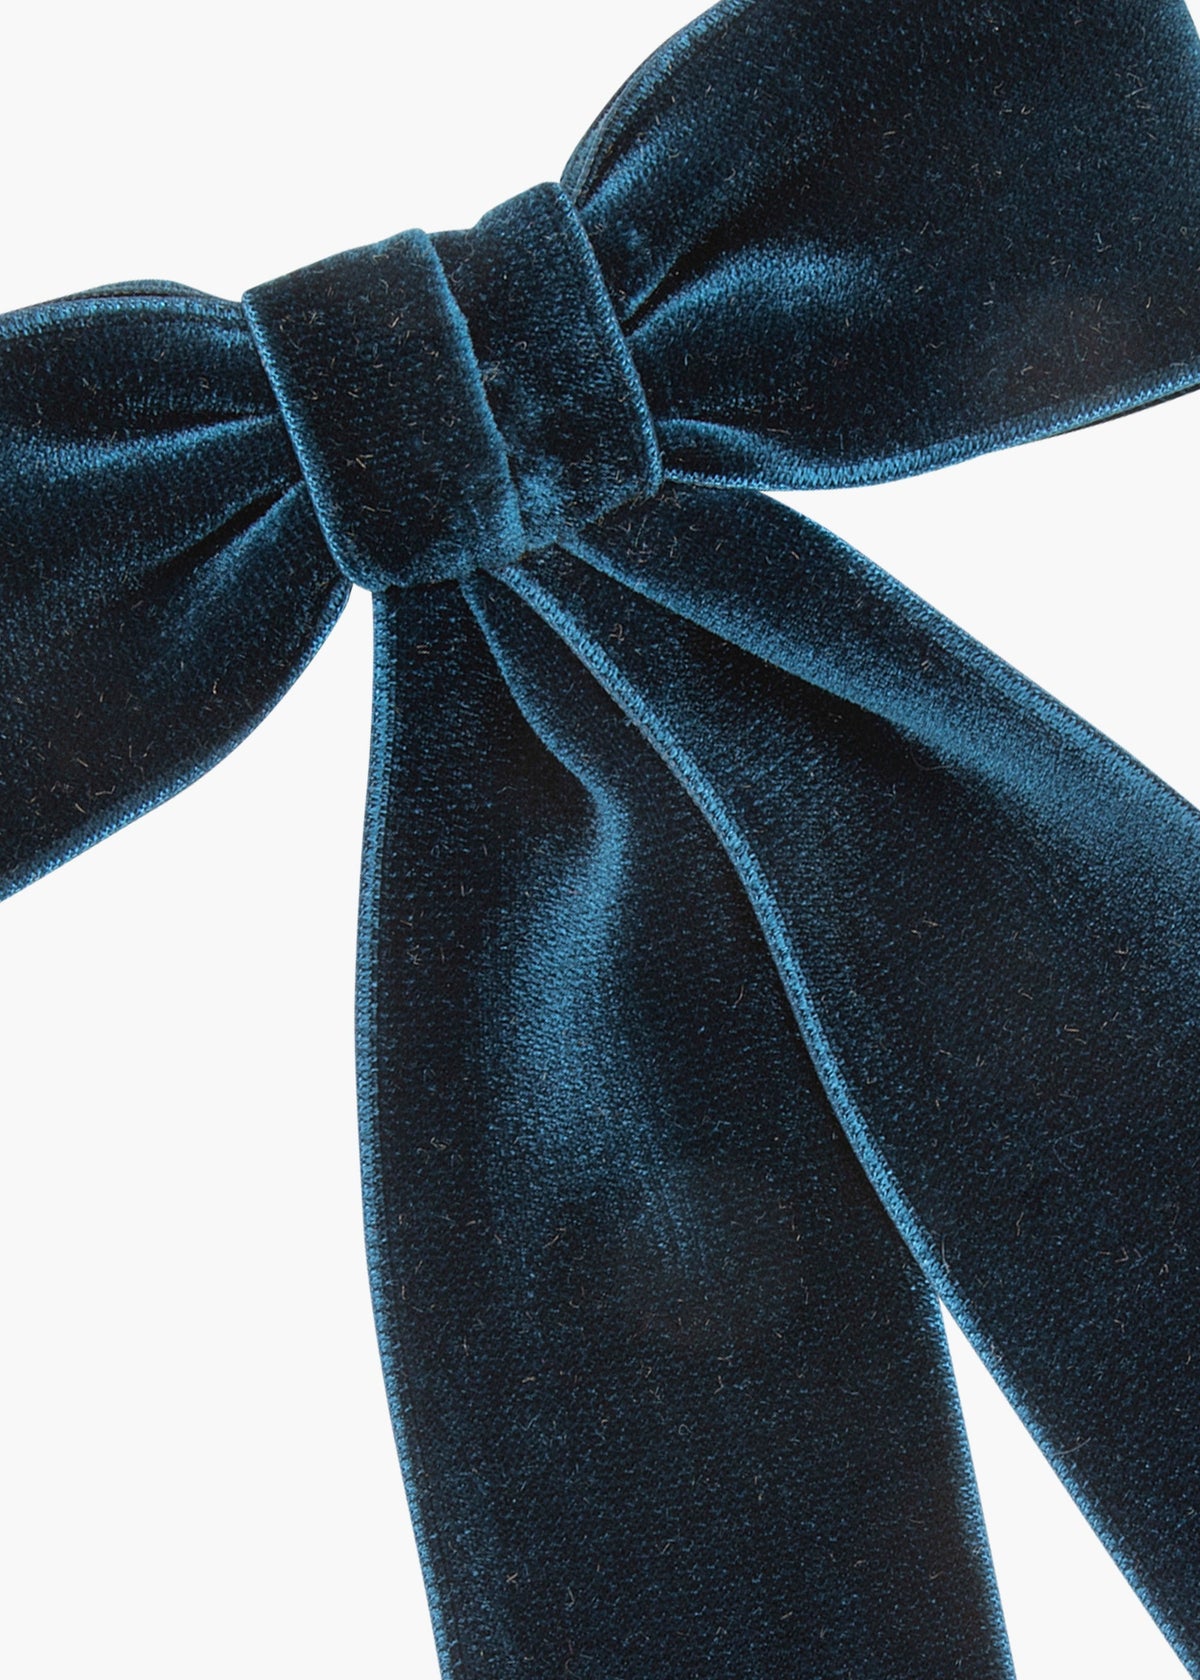 Navy Blue Velvet Ribbon Bow Hair Clip, Classic Navy Blue Velvet Hair Bow,  Elegant Ribbon Hair Bow 